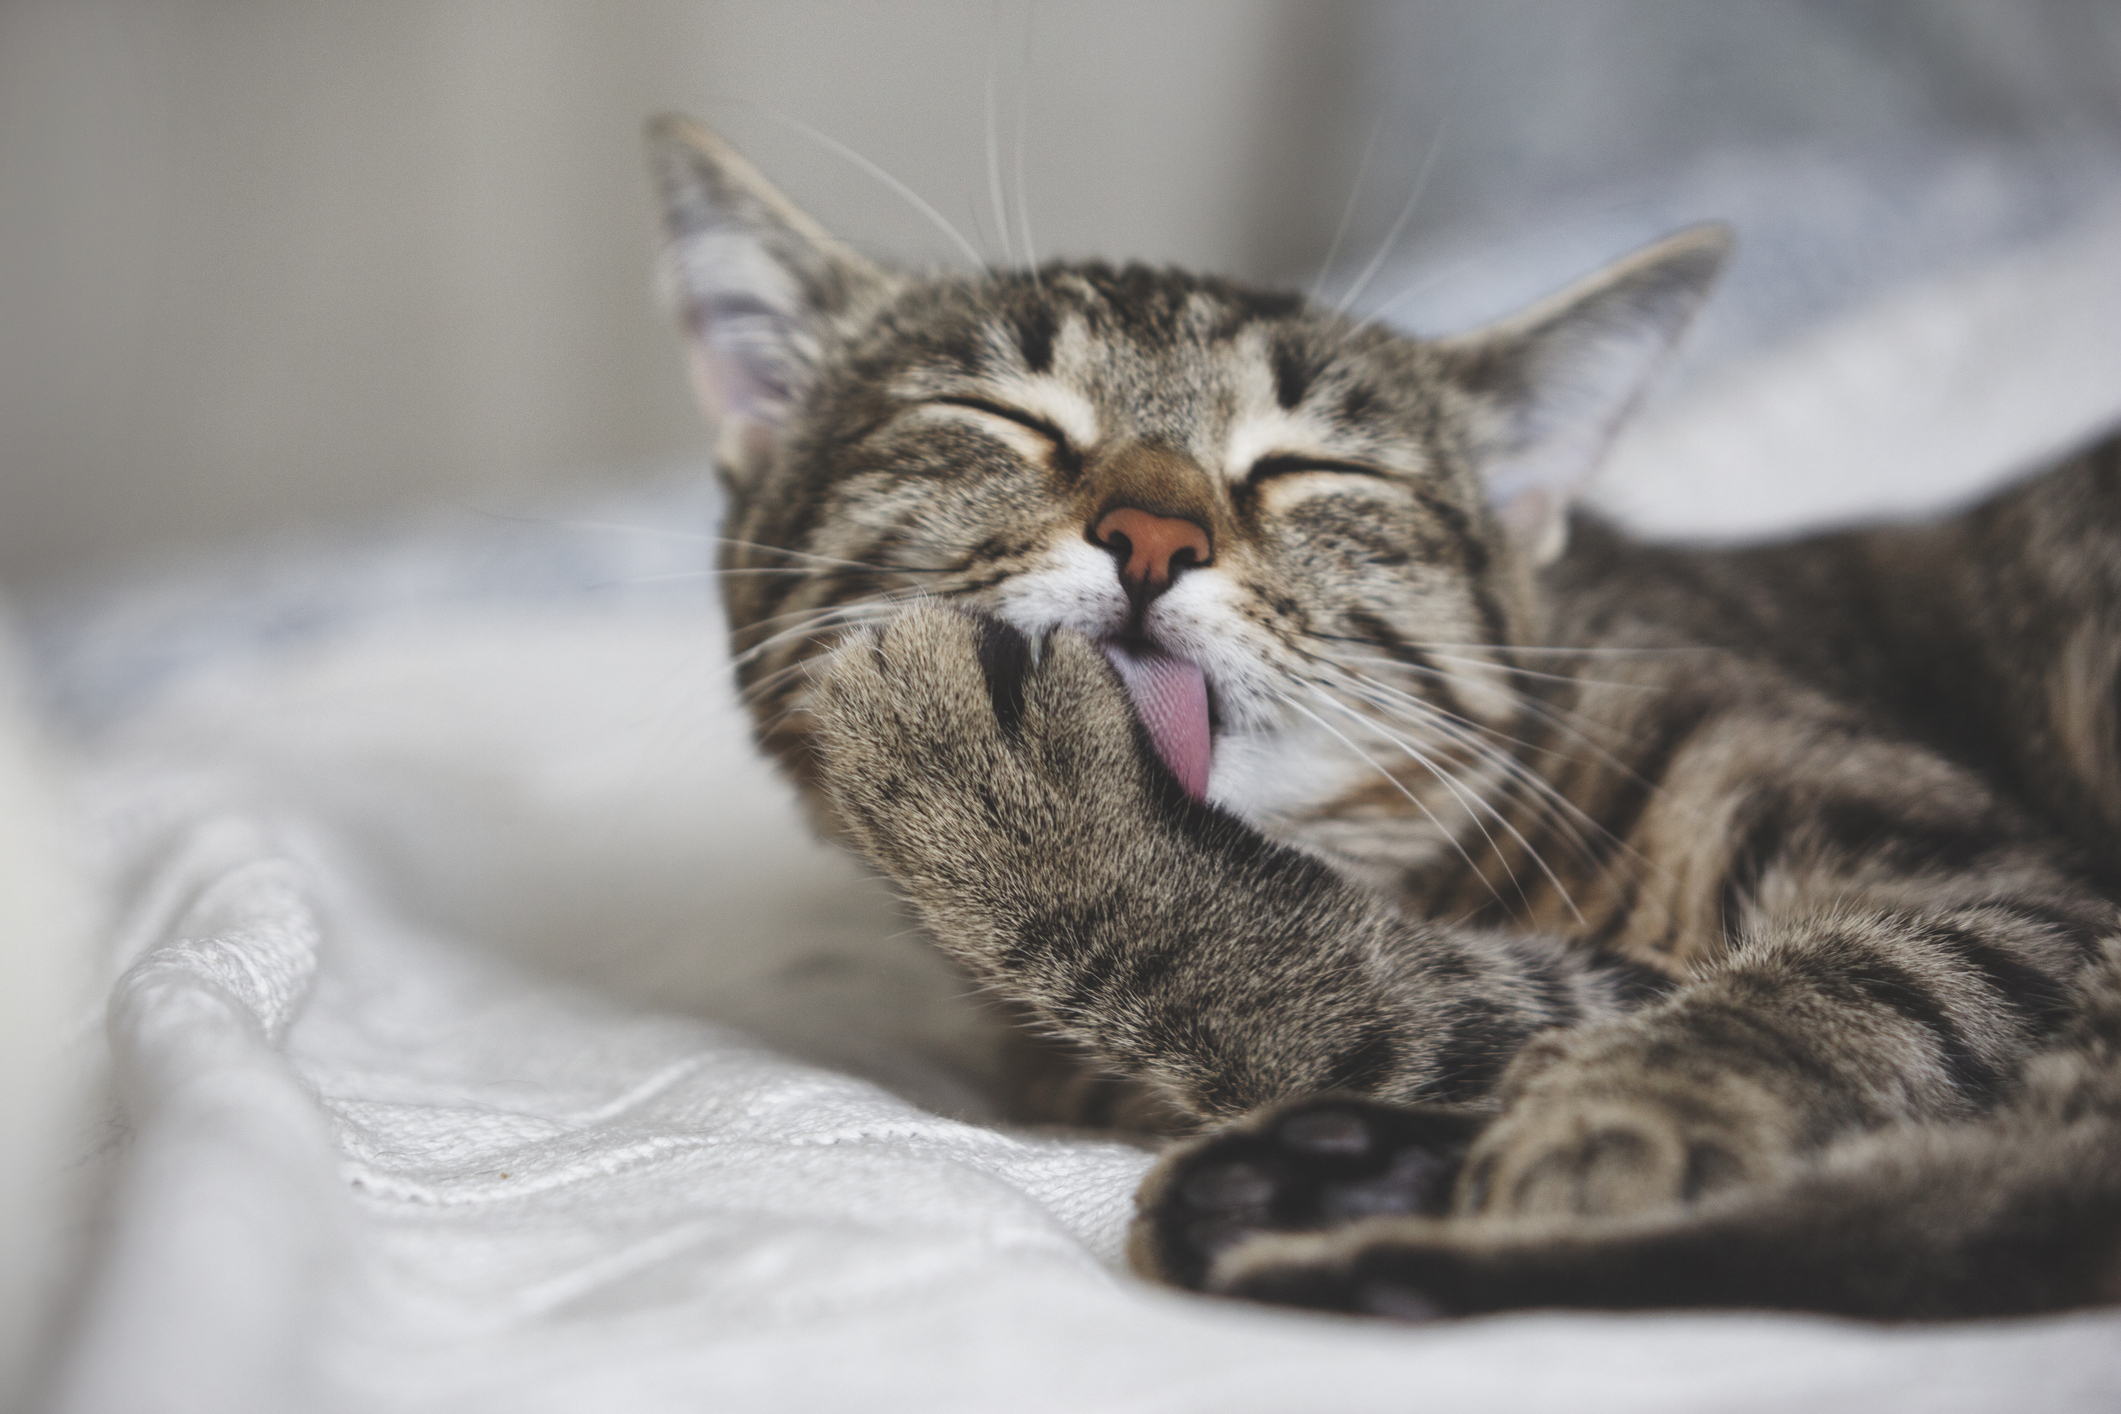 Pet cleaning: Cute tabby cat licks fur